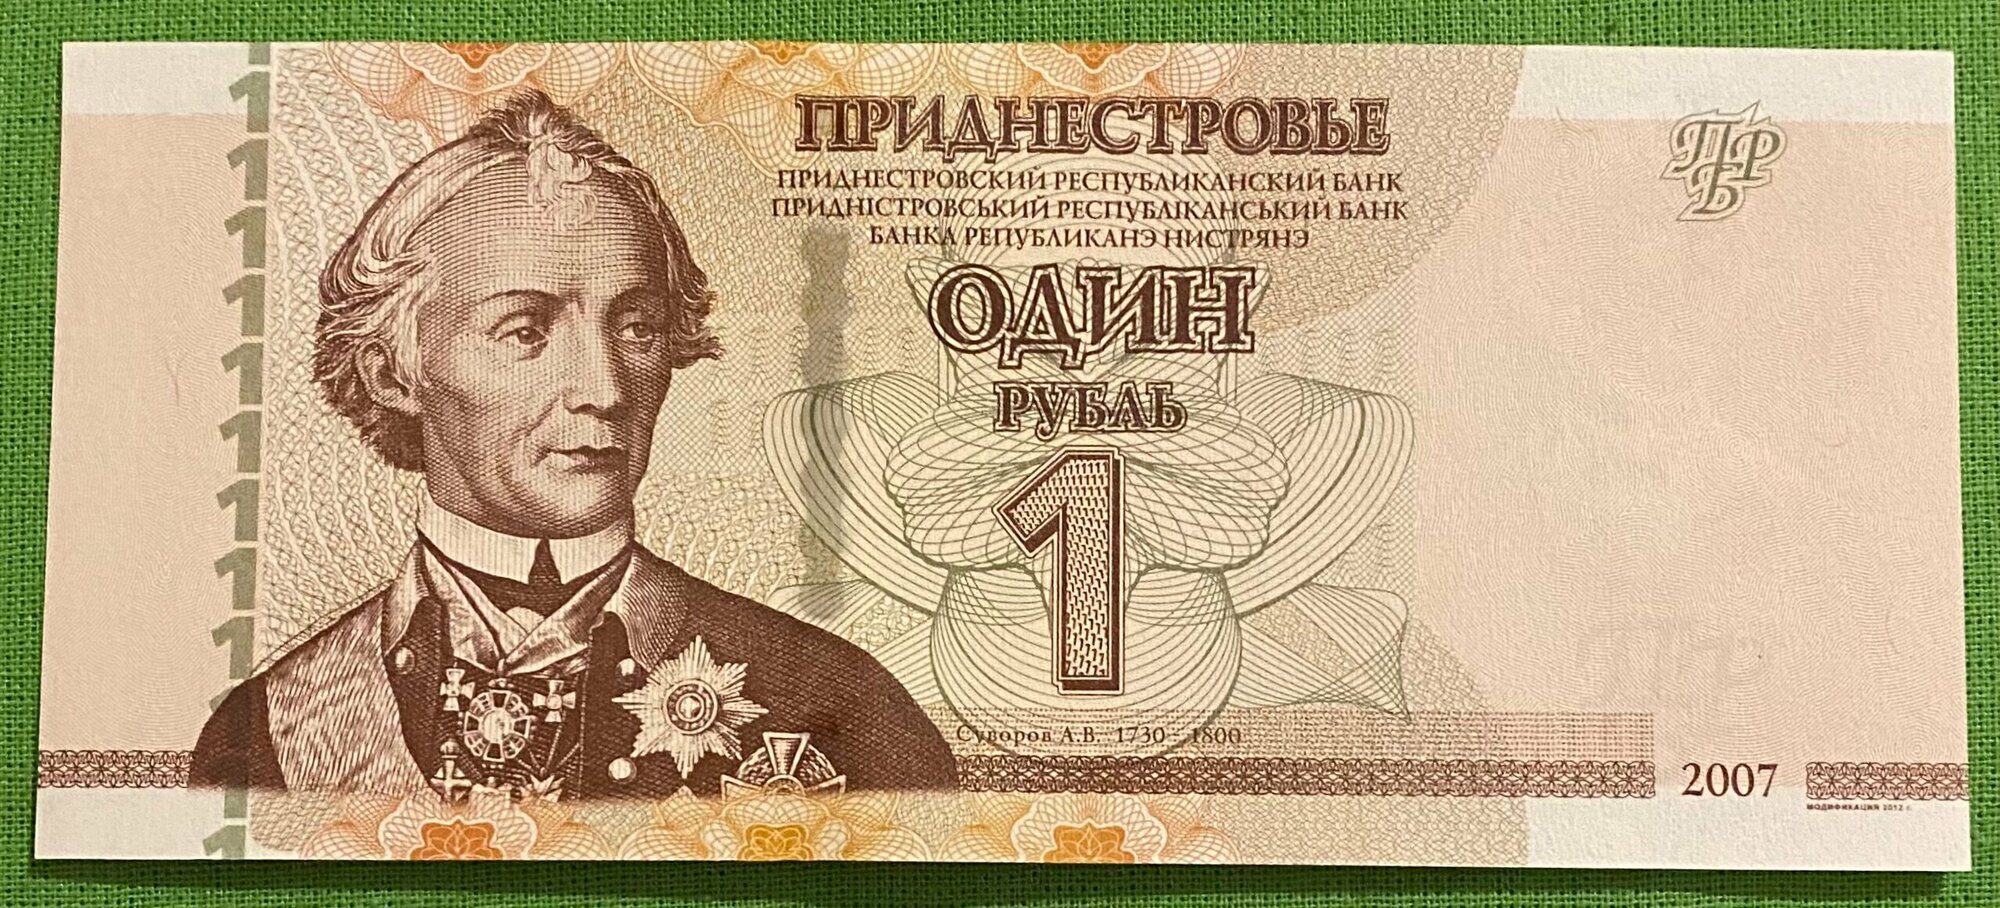 Банкнота Приднестровья 1 рубль 2007 год UNC